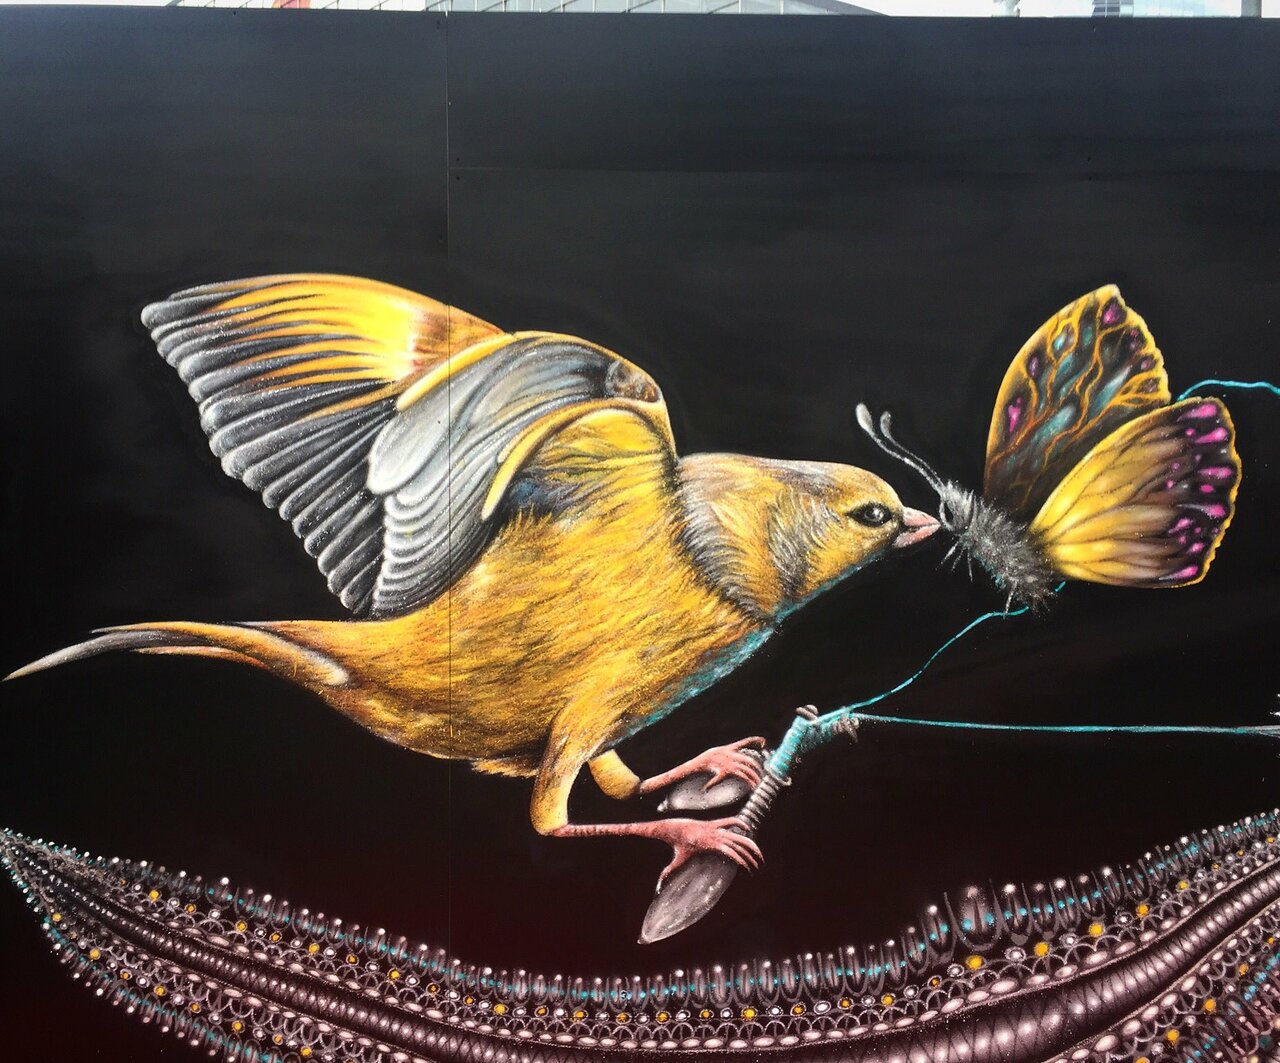 #Oiseau  #bird and #butterfly 🦋 #papillon by #degeone #dege1 #streetart #graffiti #graff #spray #bombing #wall #urbanart #graffart https://t.co/WKaRoRBgZ7